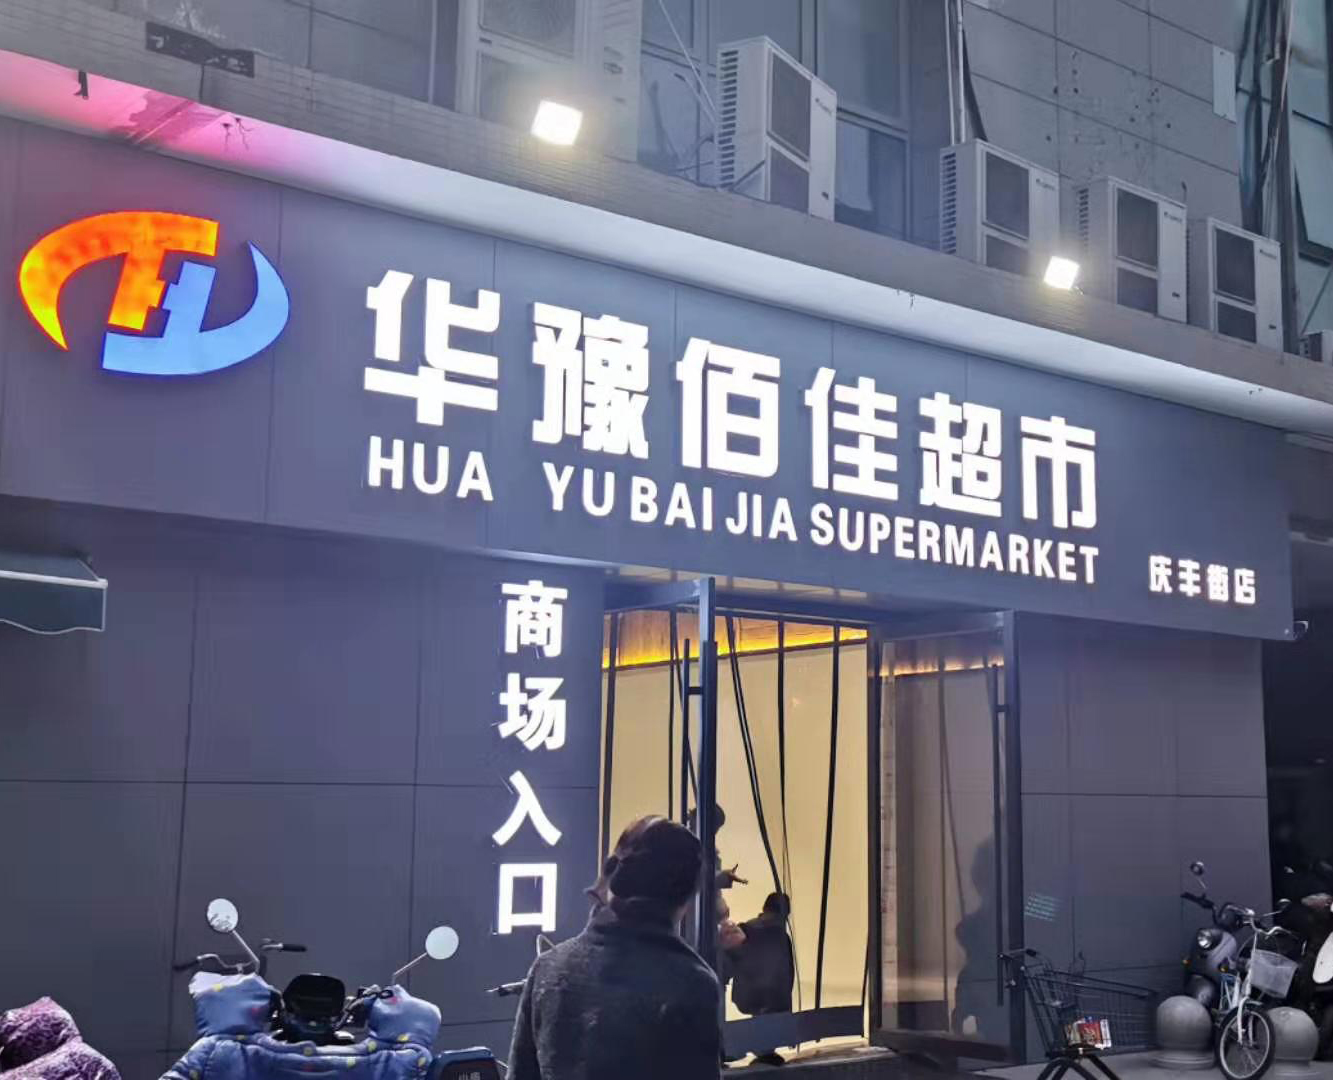 300公斤片冰机交付郑州华豫佰佳超市